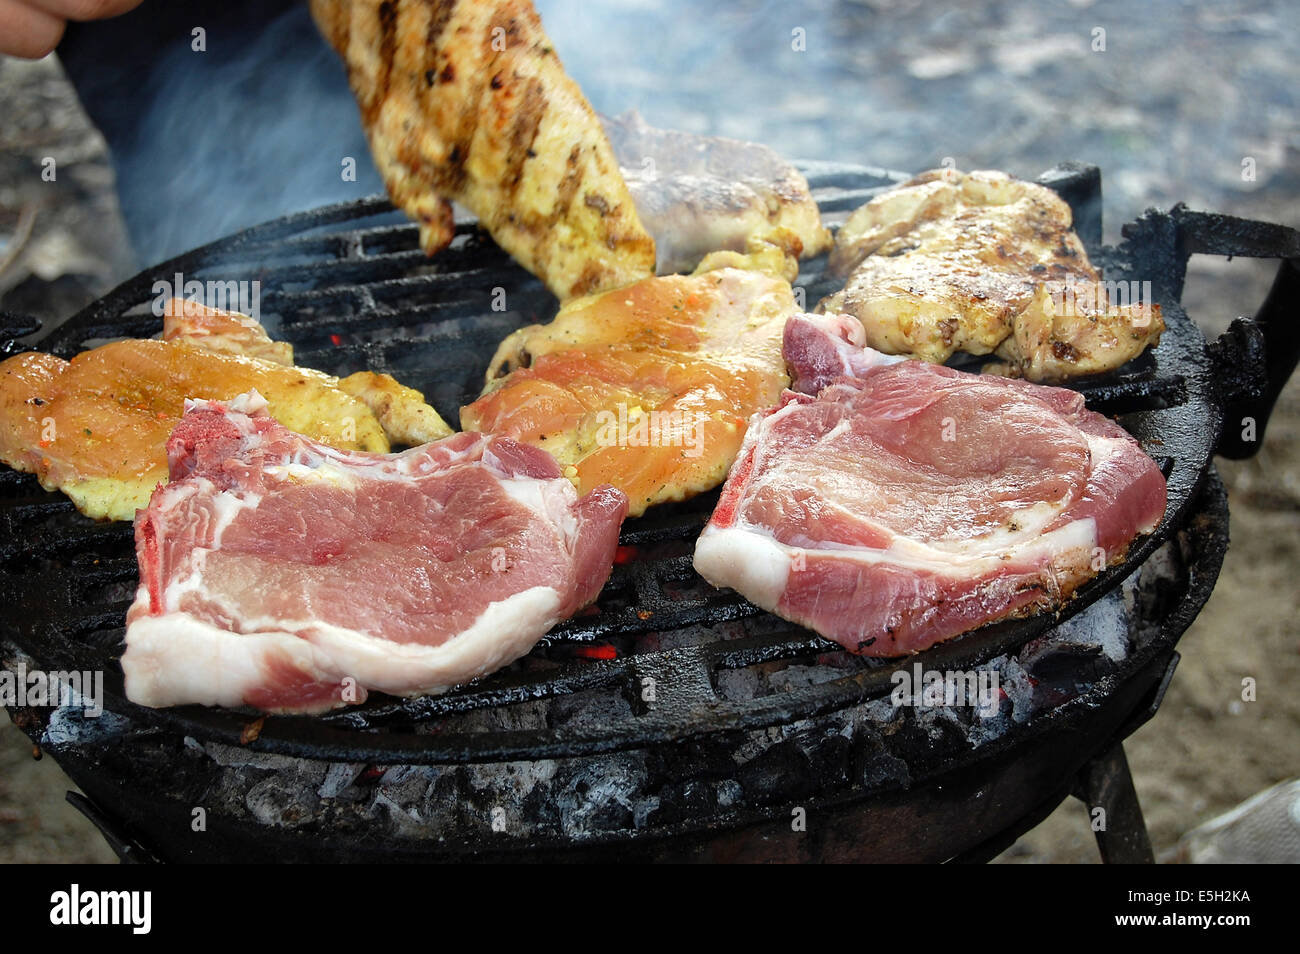 La viande grillée, préparée pour un repas de famille Banque D'Images